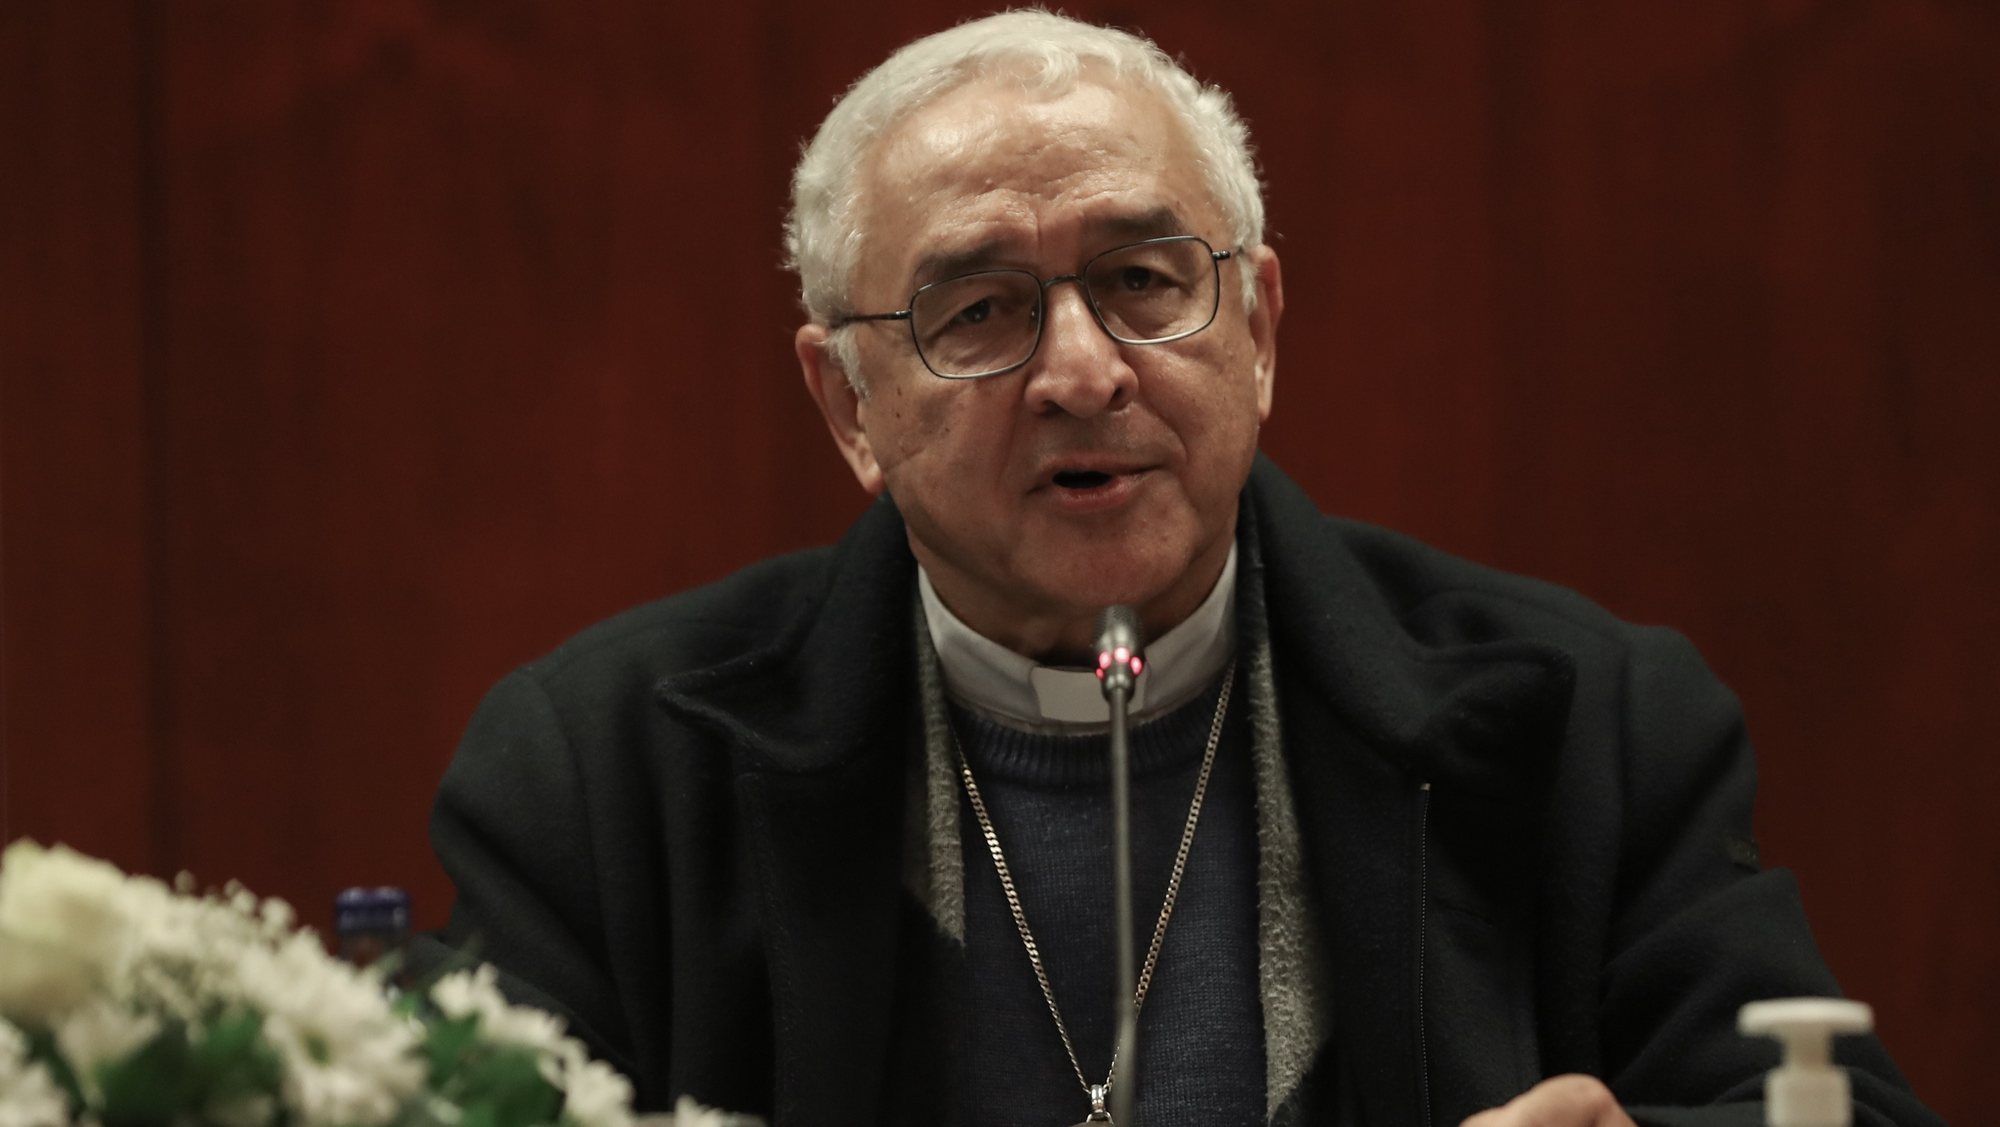 O presidente da Conferência Episcopal Portuguesa (CEP), José Ornelas, durante a conferência de imprensa da CEP sobre os abusos de menores na igreja, em Lisboa, 02 de dezembro de 2021. ANTÓNIO COTRIM/LUSA